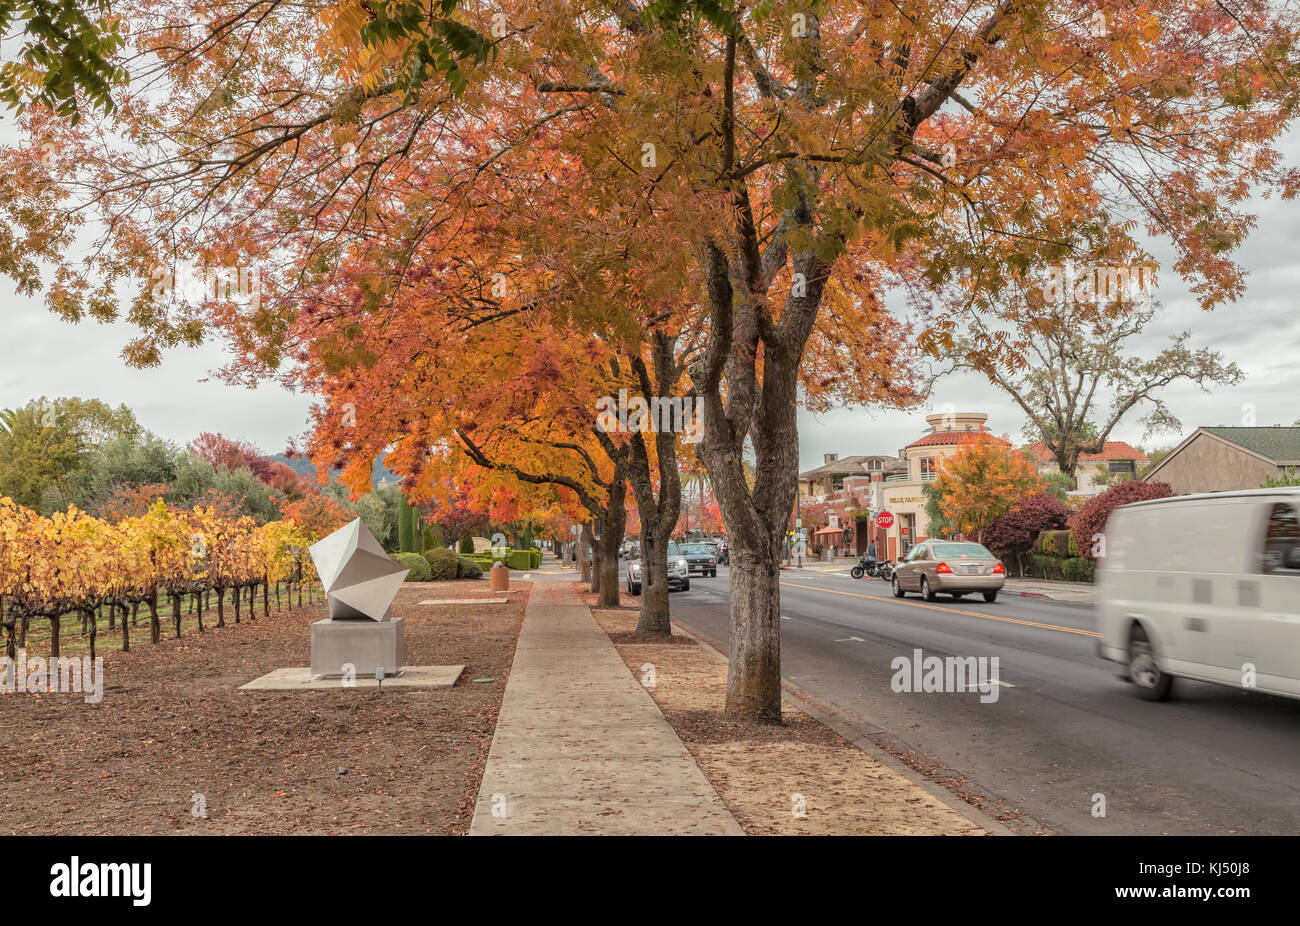 Chinesische pistache (Pistacia chinensis), in den Farben des Herbstes, auf der Straße von Yountville, Napa Valley, Kalifornien, USA. Stockfoto